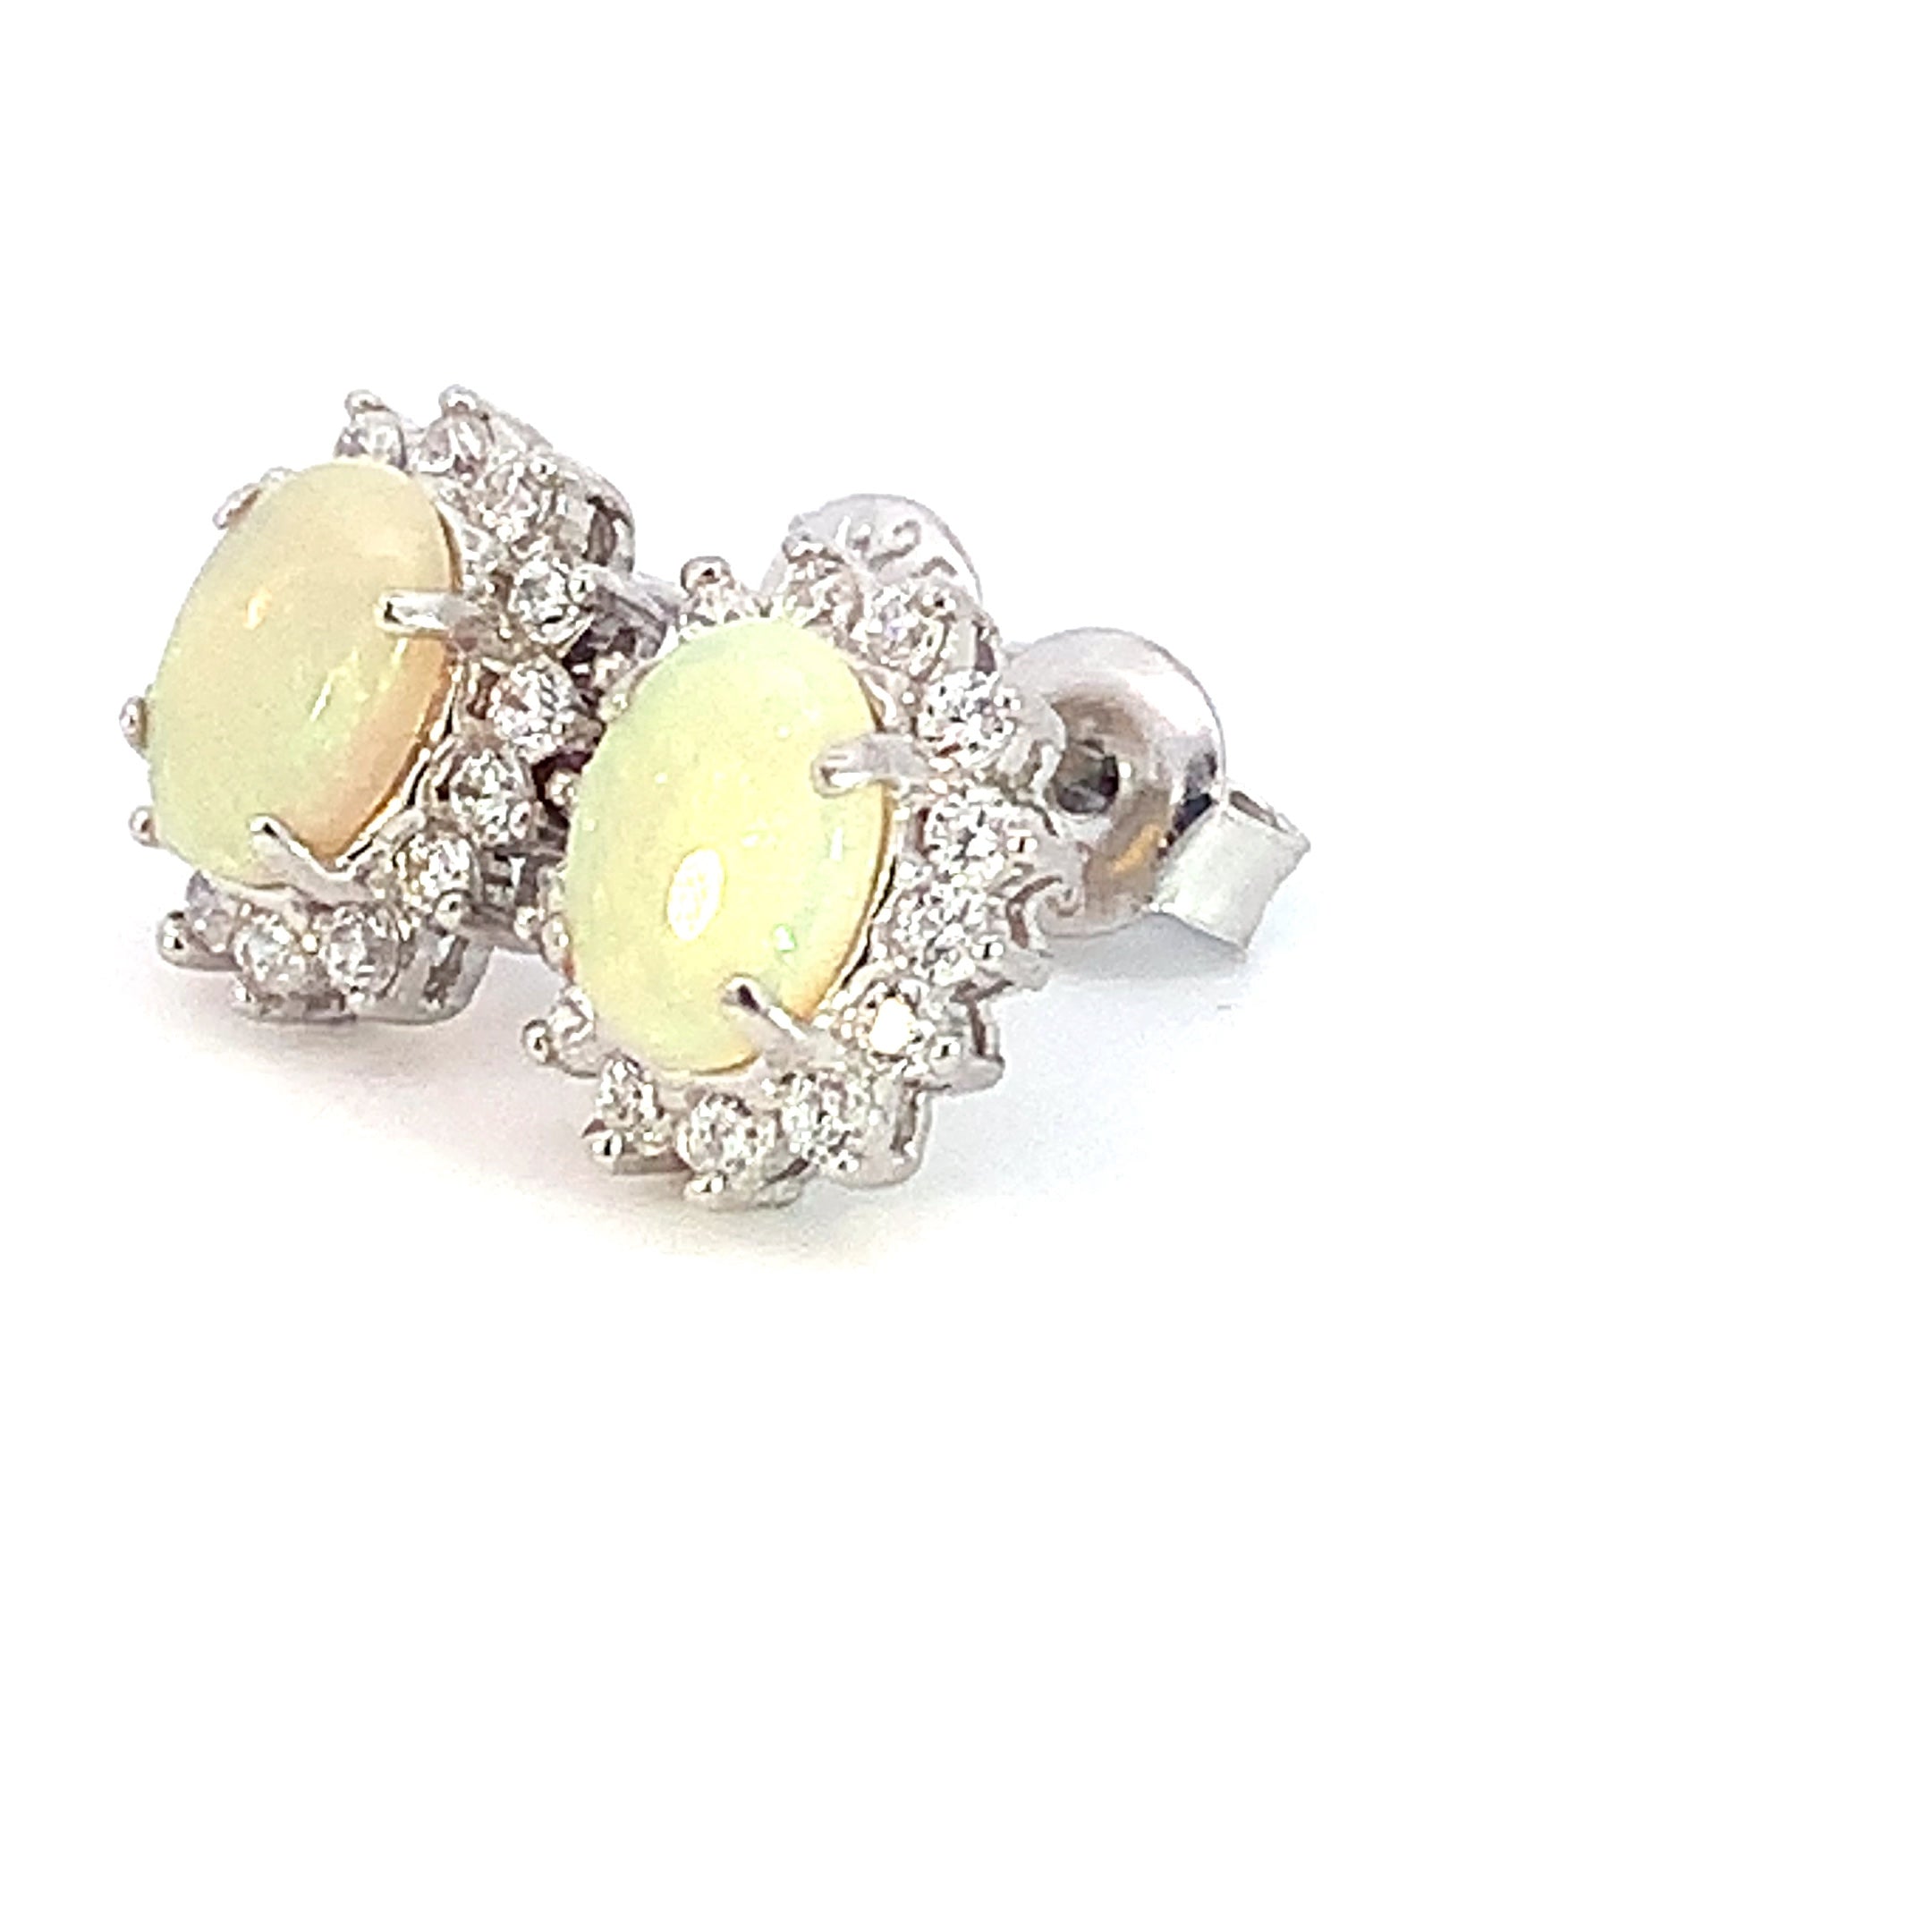 Sterling Silver 7x5mm White Opal cluster earrings - Masterpiece Jewellery Opal & Gems Sydney Australia | Online Shop